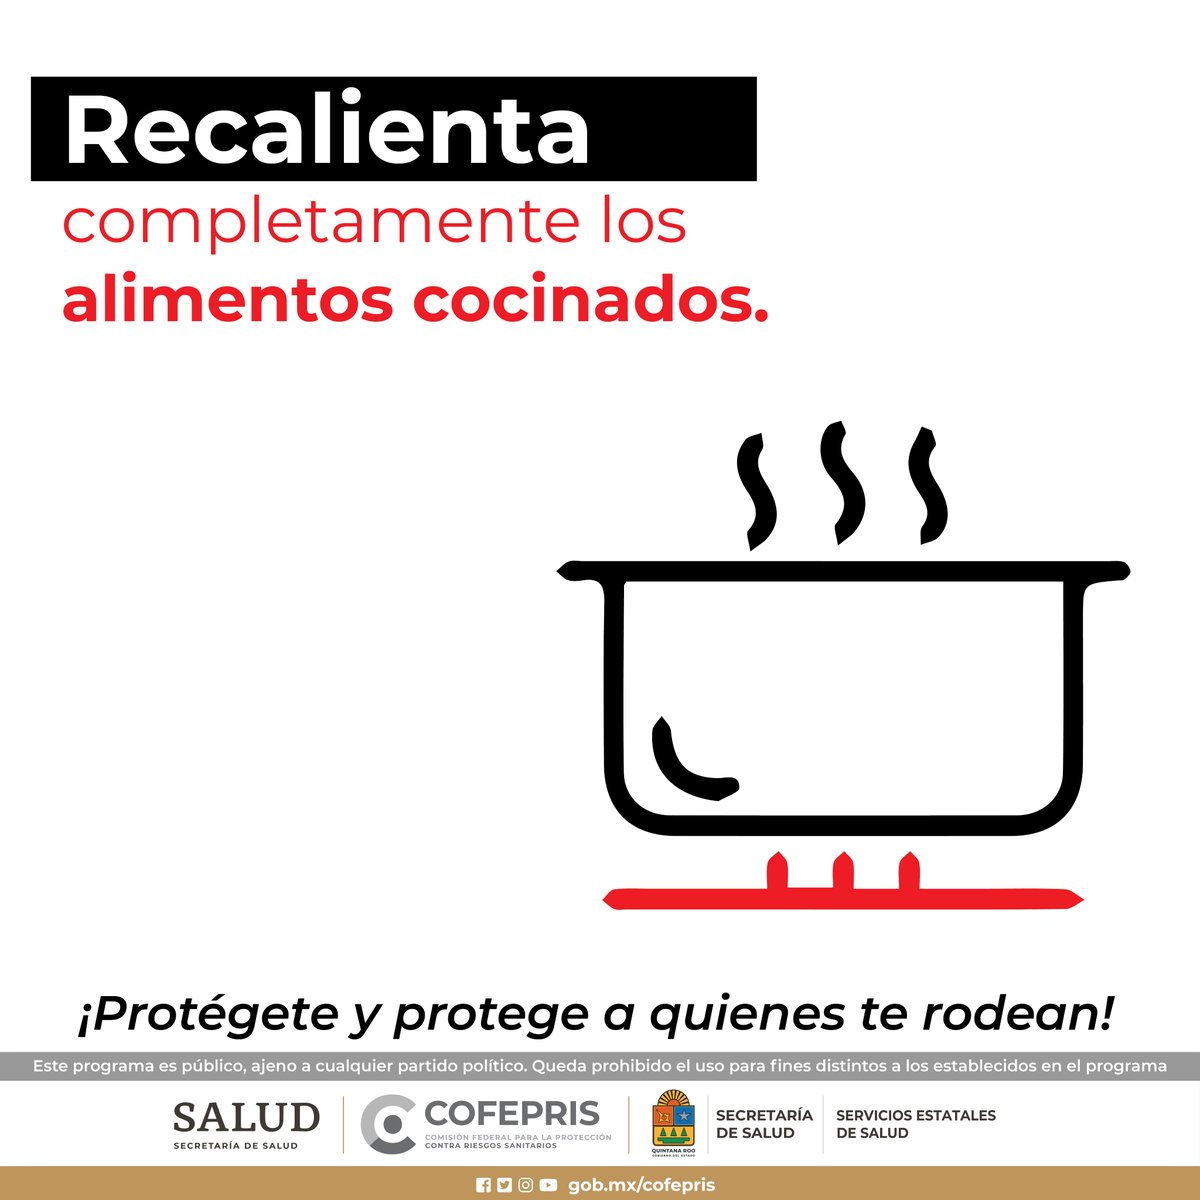 Recalienta completamente los alimentos cocinados.
@COFEPRIS 
#CofeprisTeProtege
#cofepriságil
#CofeprisJusta
#CofeprisTransparente
#Emergencias
#DprisQroo